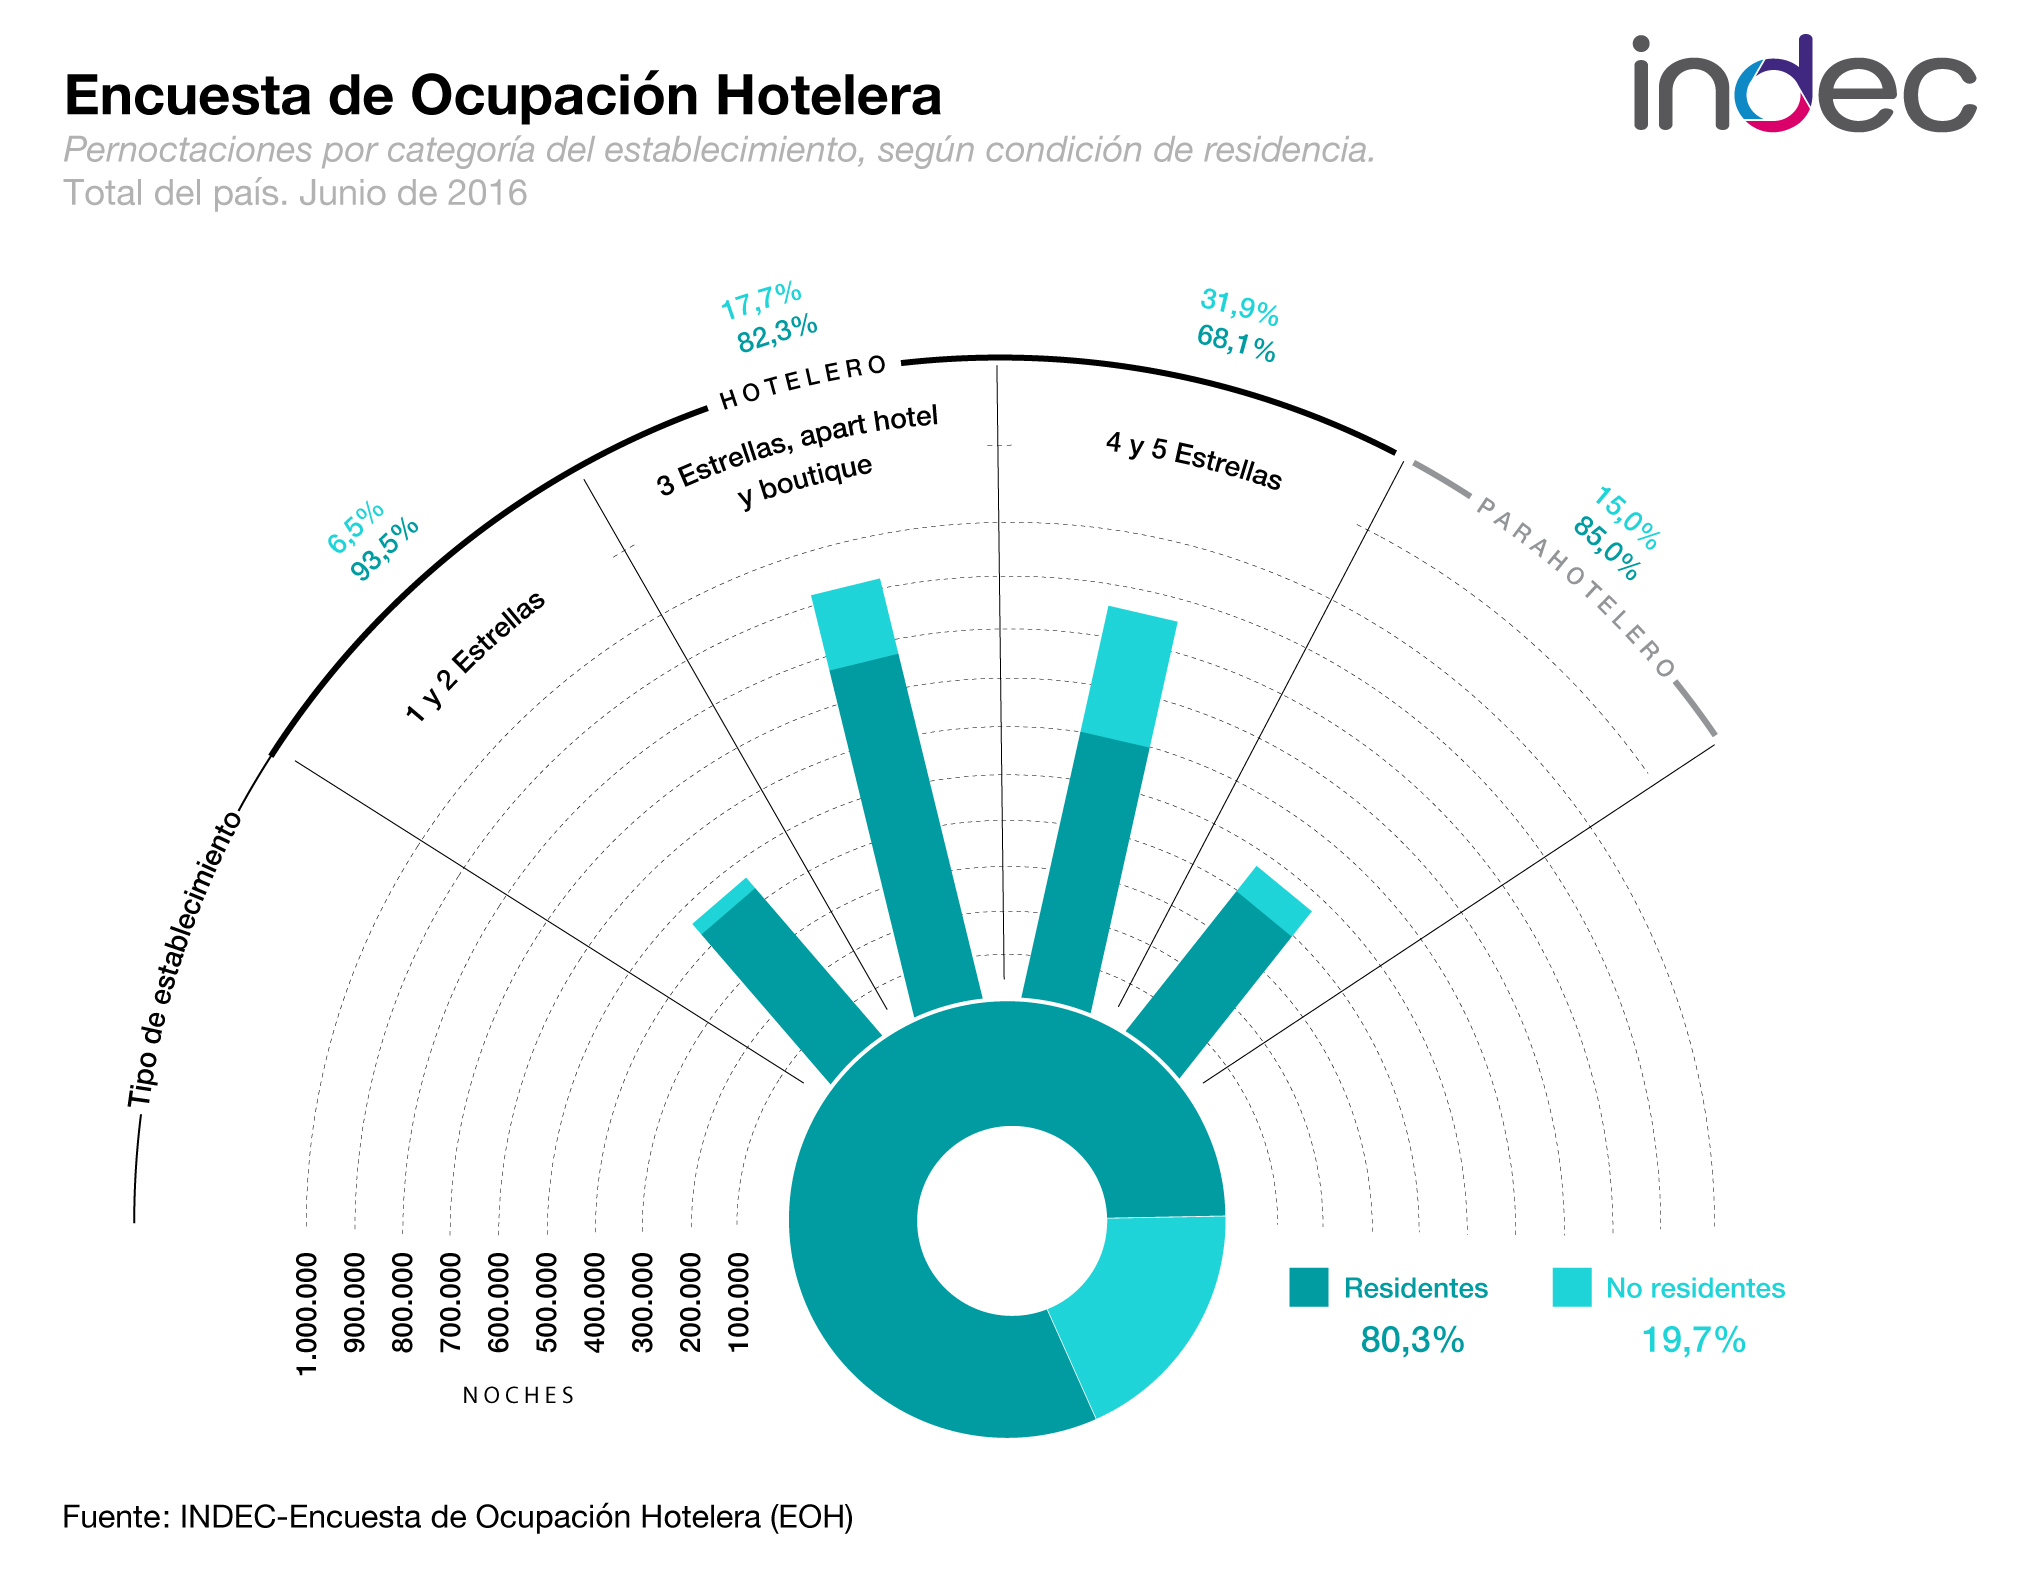 Encuesta de Ocupación Hotelera. Pernoctaciones por categoría de establecimiento, según condición de residencia. Total del país. Junio de 2016